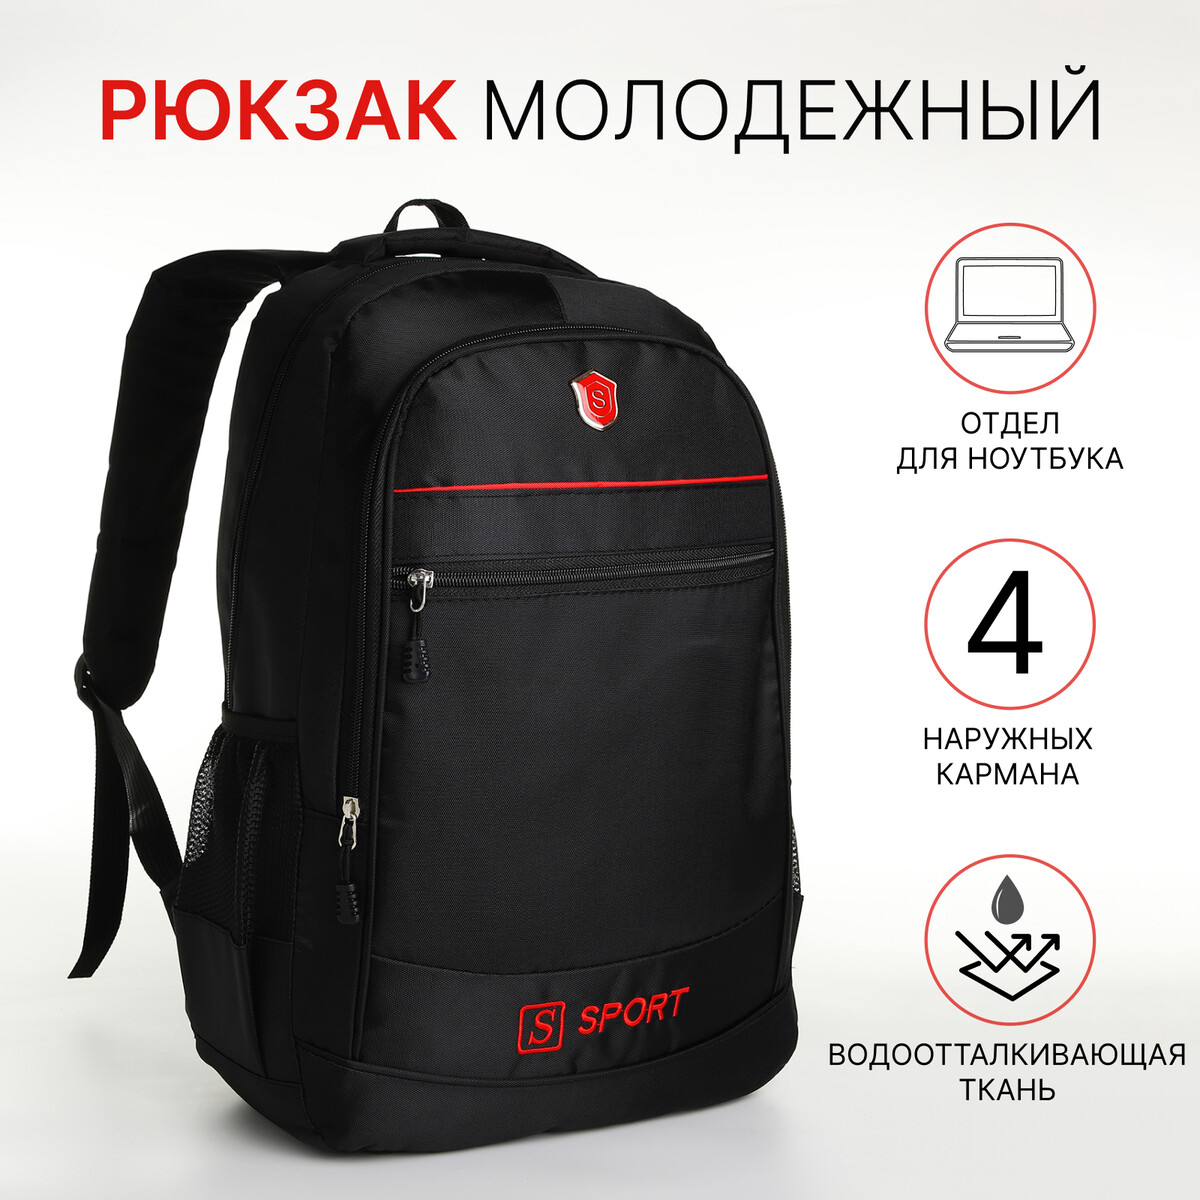 Рюкзак молодежный на молнии, 4 кармана, цвет черный/красный рюкзак moleskine metro 15 красный